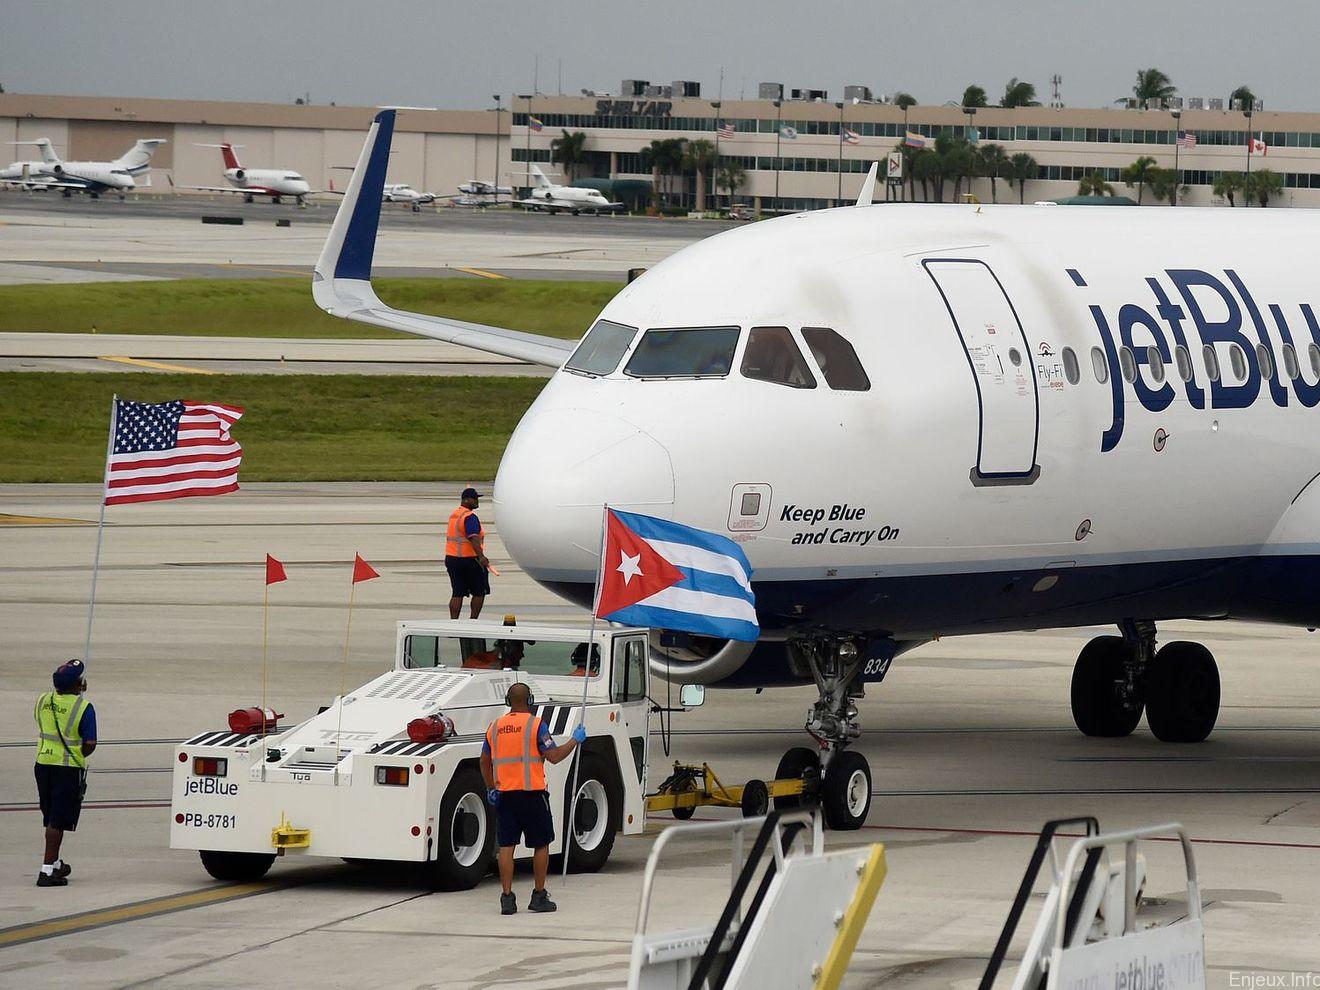 Les Etats-Unis et Cuba inaugurent le premier vol commercial depuis un demi-siècle